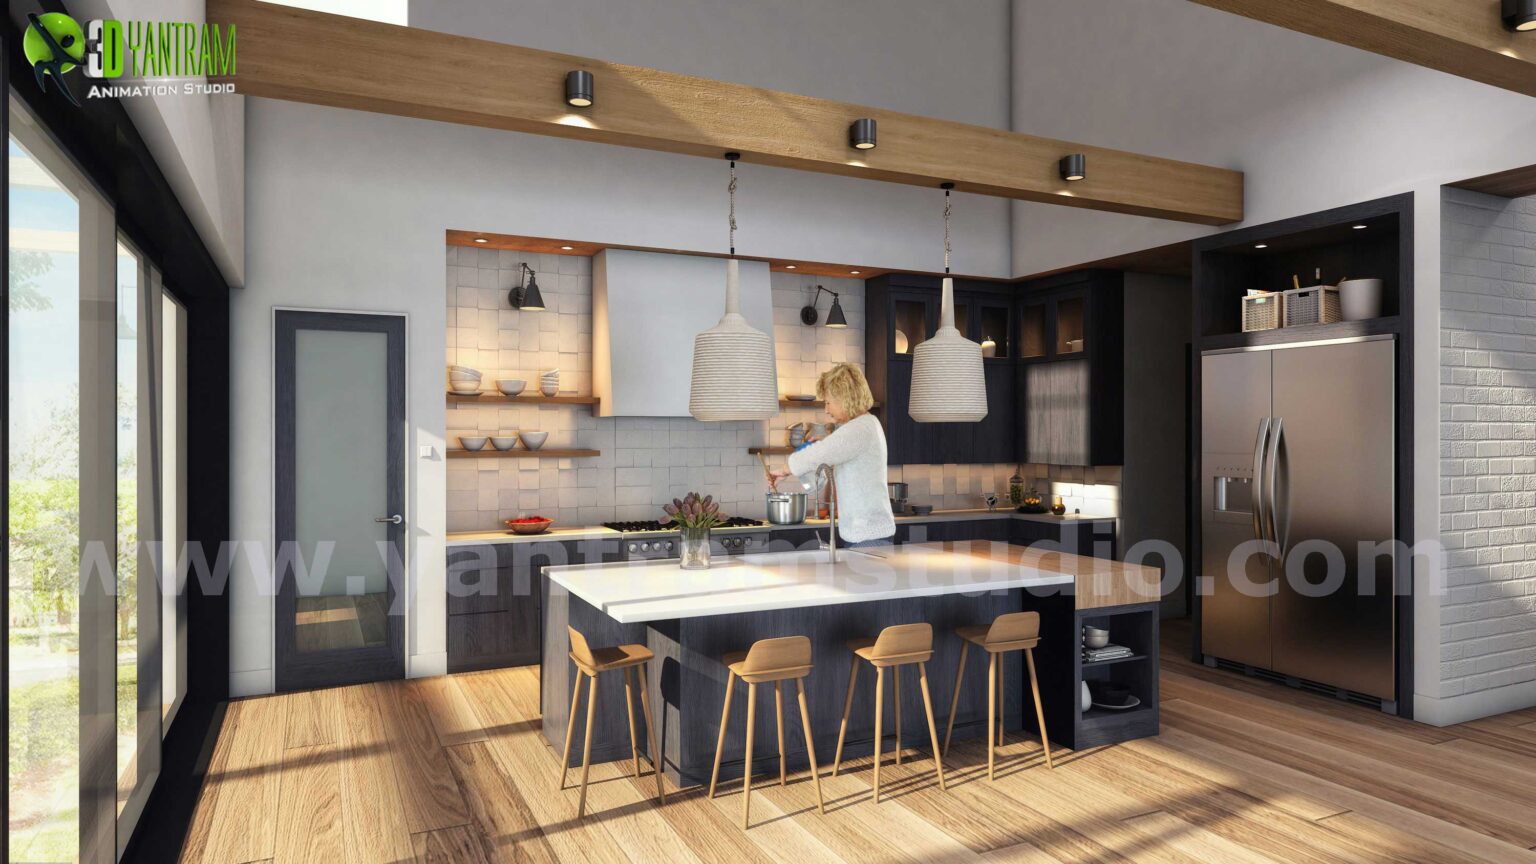 2-3d-kitchen-architectural-ideas-by-interior-design-for-home-1536x864.jpg -  by Yantramarchitecturaldesignstudio